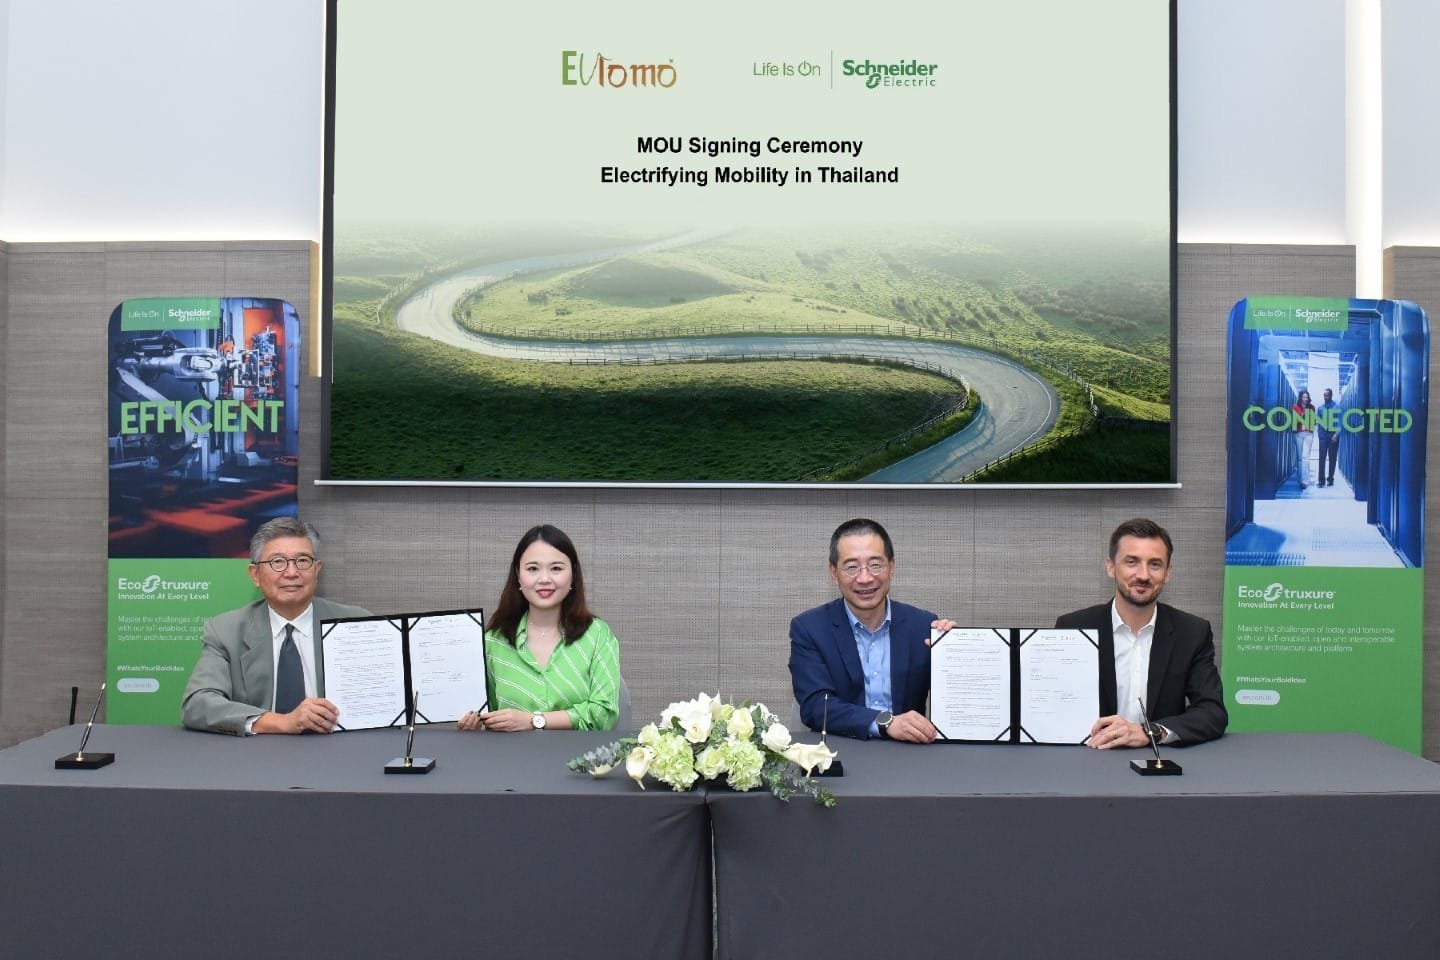 "อีวีโลโม เทคโนโลยีส์" ร่วมกับ "ชไนเดอร์ อิเล็คทริค ประเทศไทย" ขยายพื้นที่อินฟราสตรัคเจอร์รถยนต์ไฟฟ้าในไทย